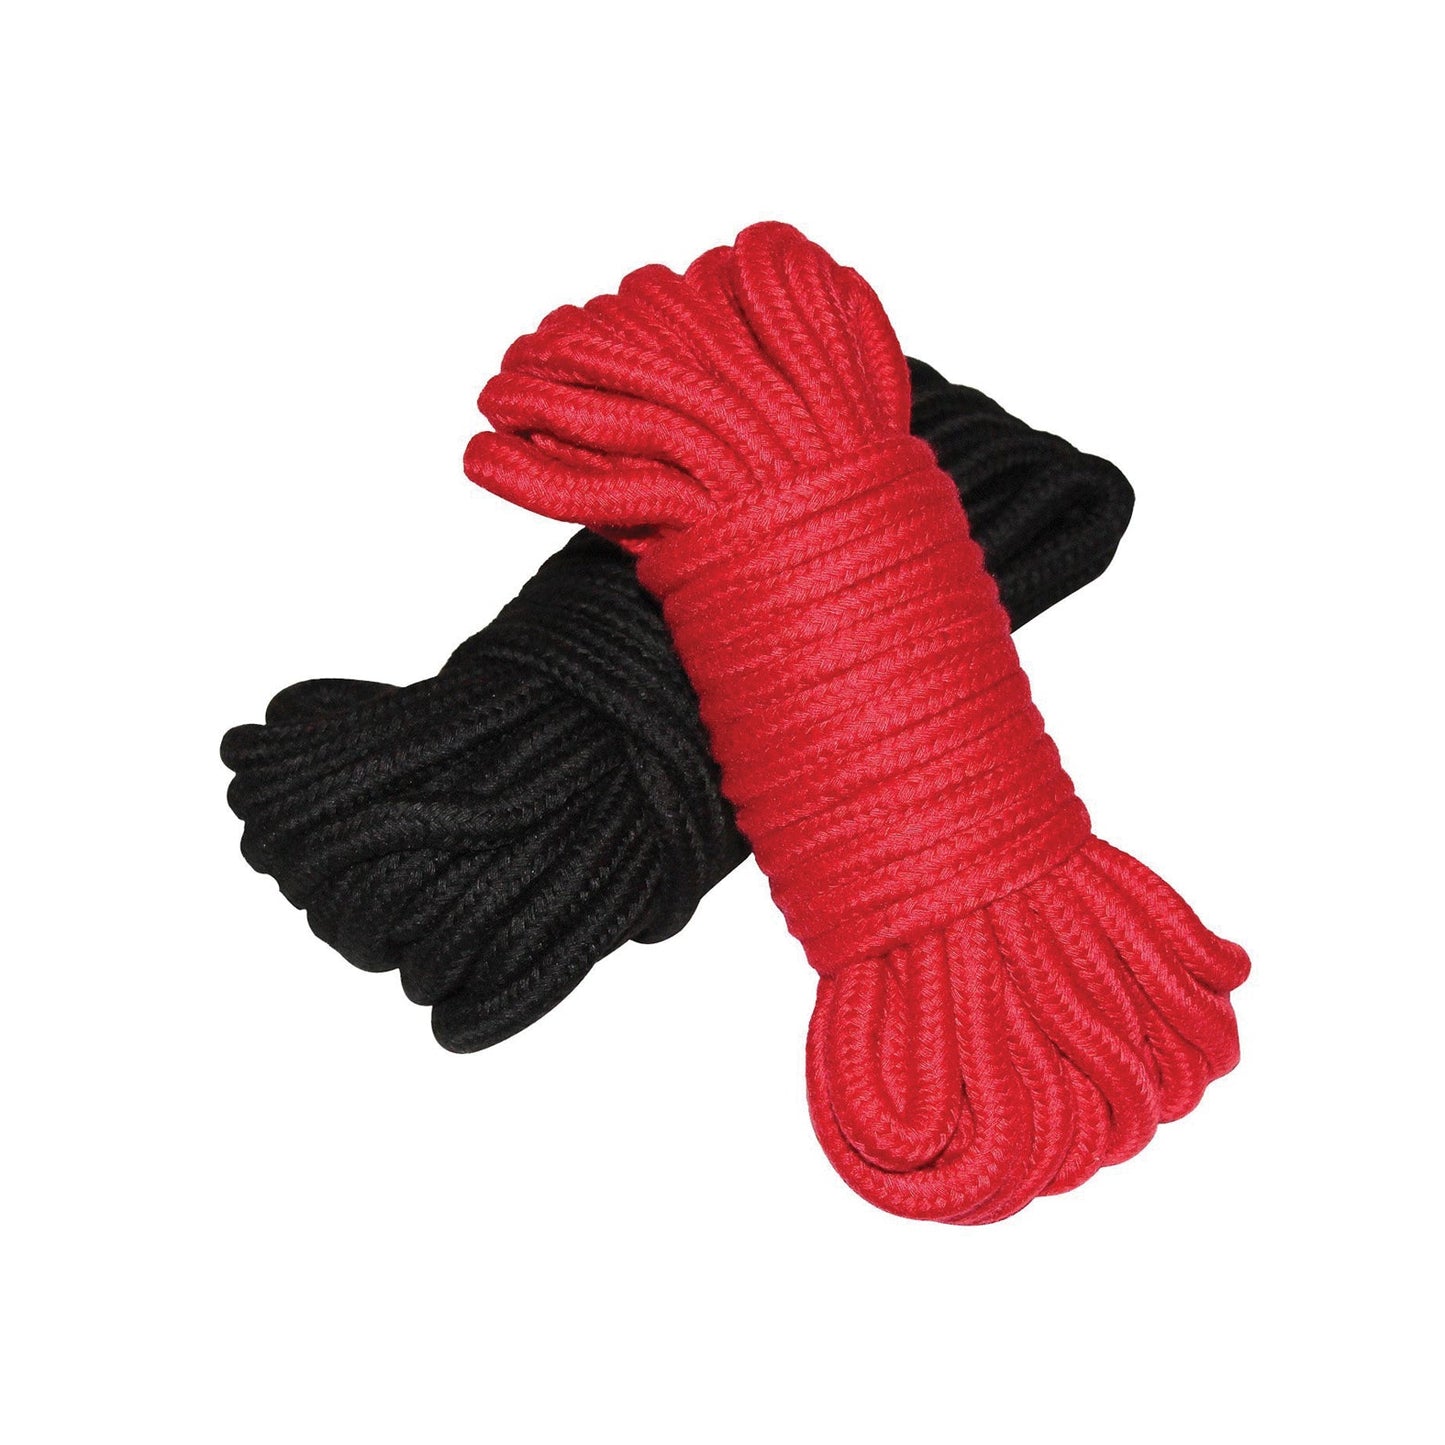 Plesur Cotton Shibari Bondage Rope 2 Pack - Black & Red